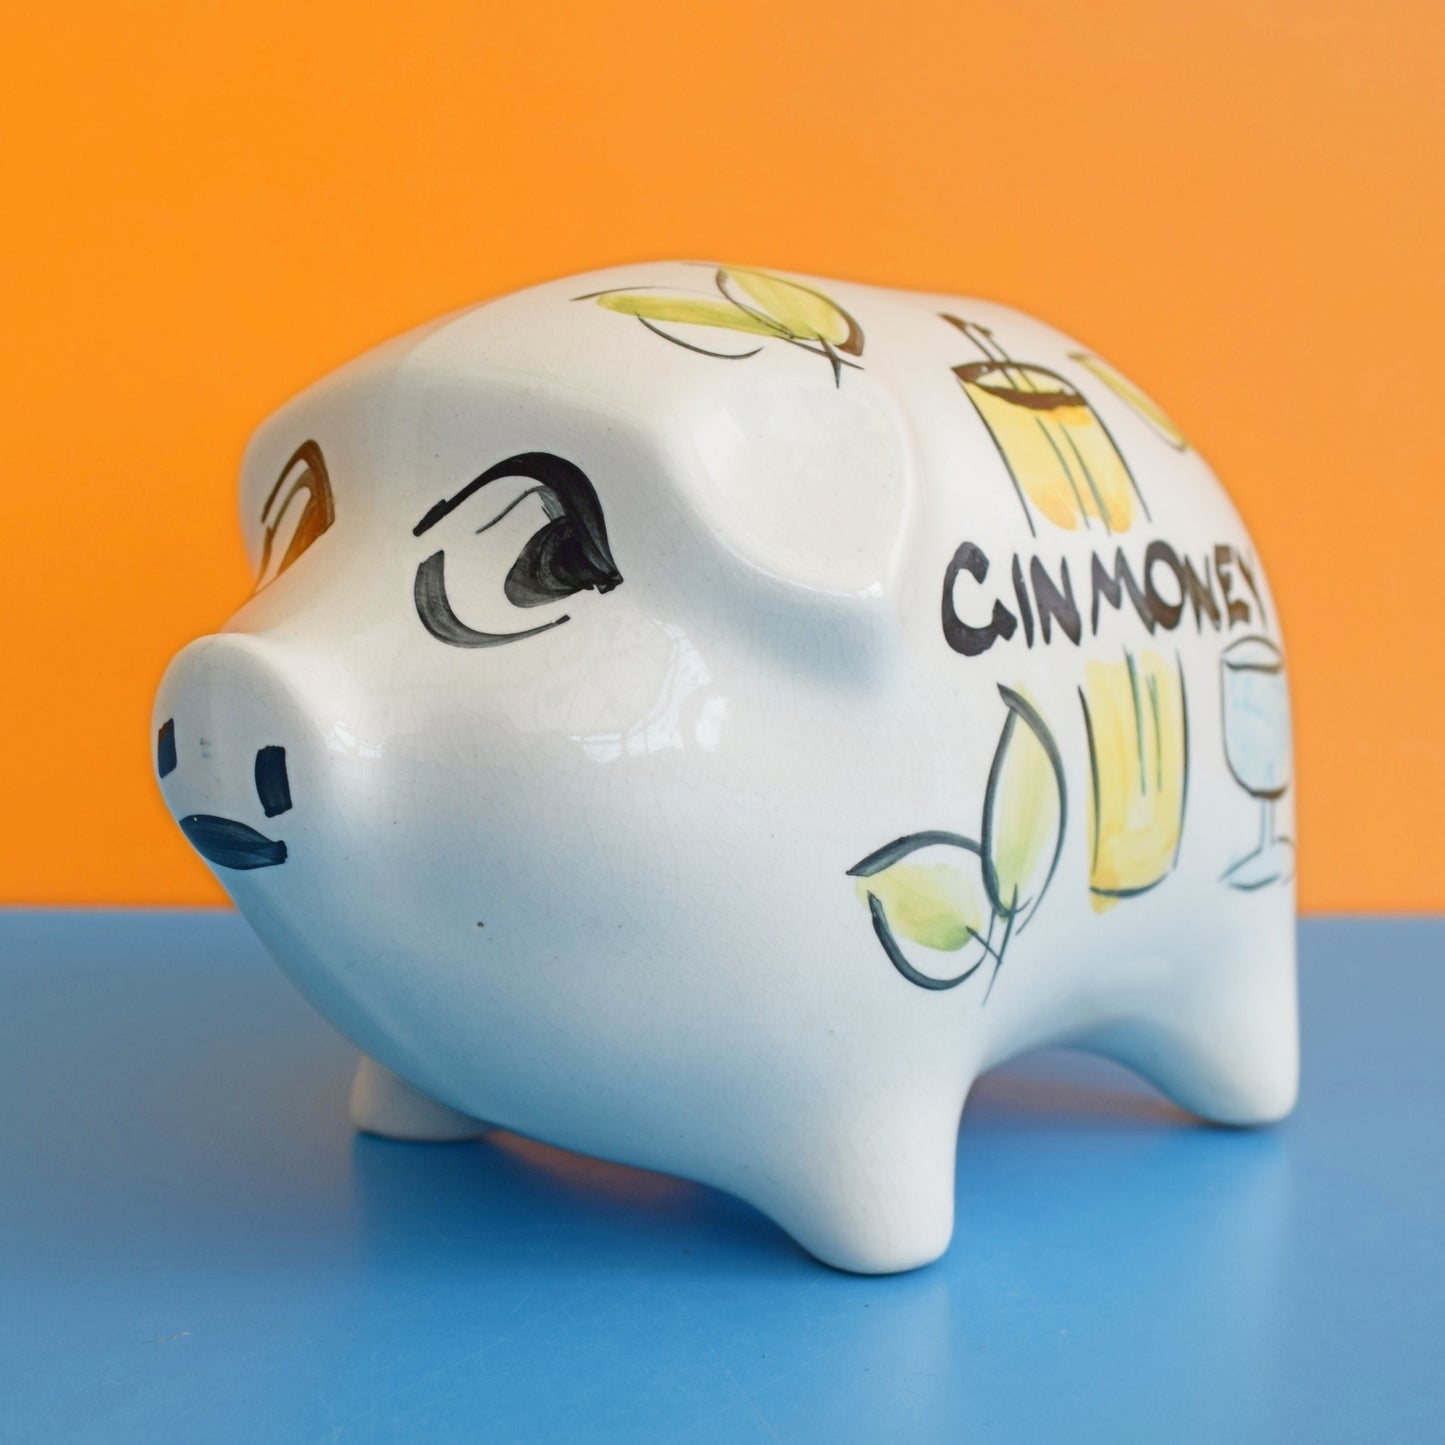 Vintage 1960s Pig Money Bank - Geoffrey Maund - Gin Money